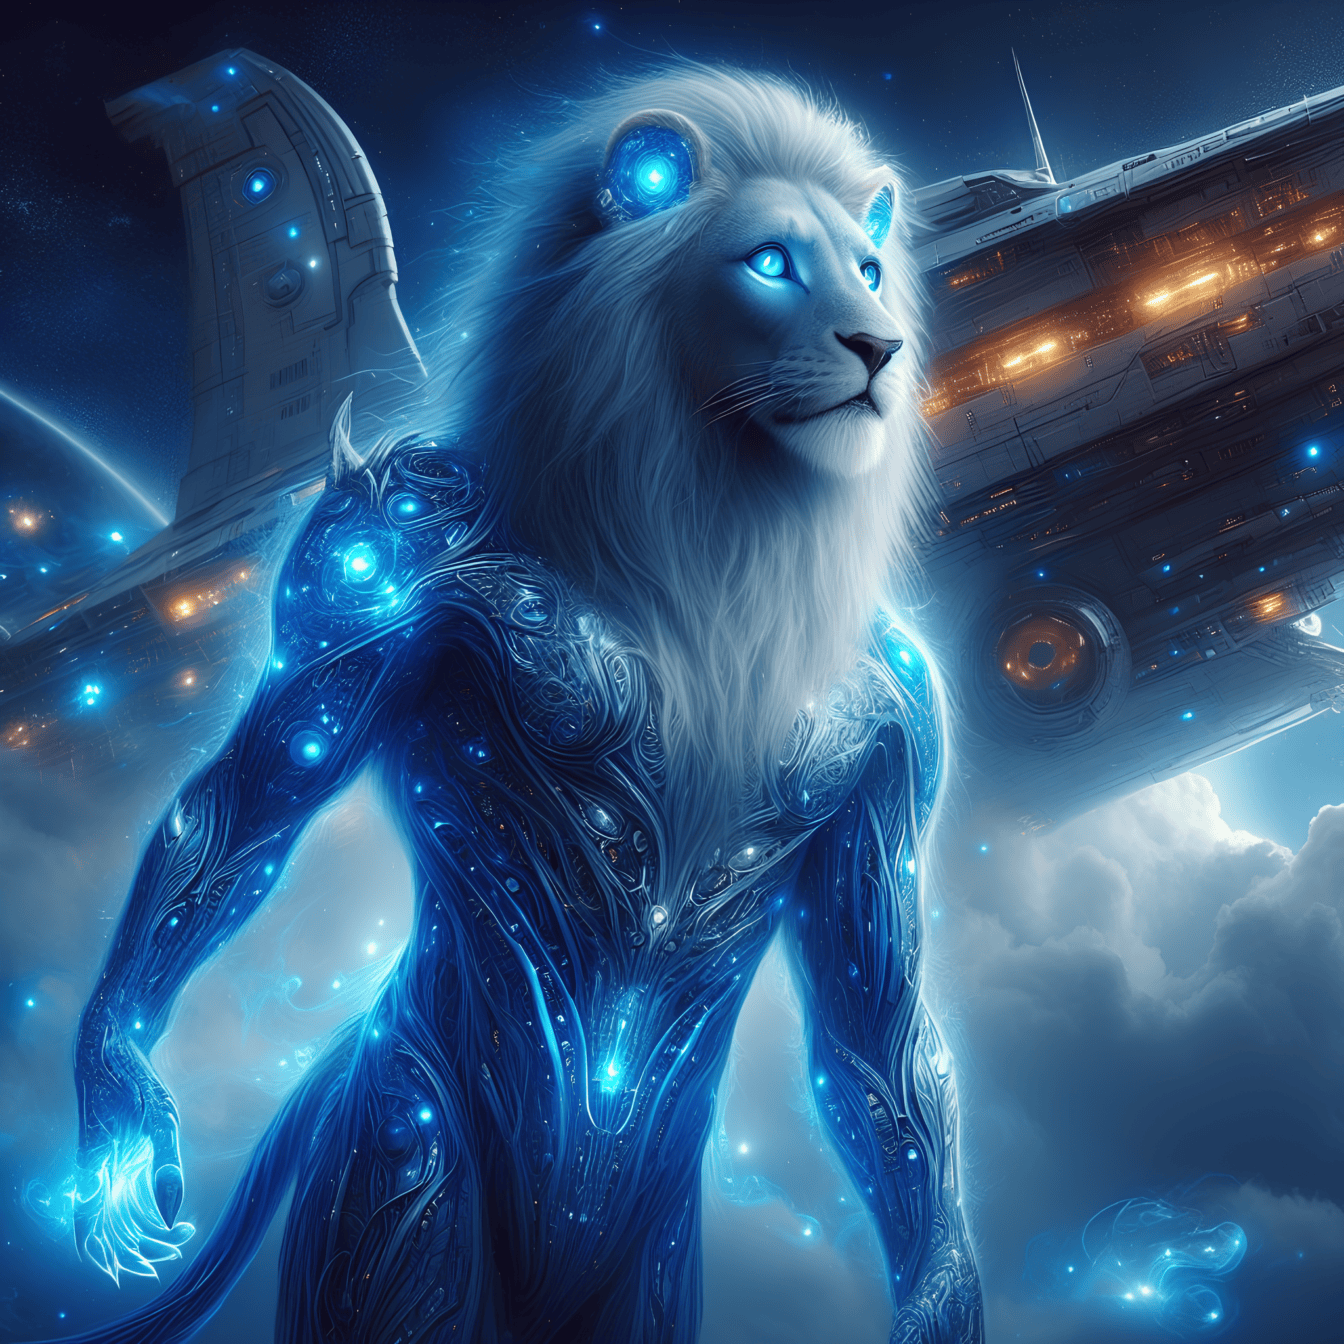 Một con sư tử màu xanh đậm-người ngoài hành tinh, một cyborg hình người ngoài trái đất với đôi mắt phát sáng